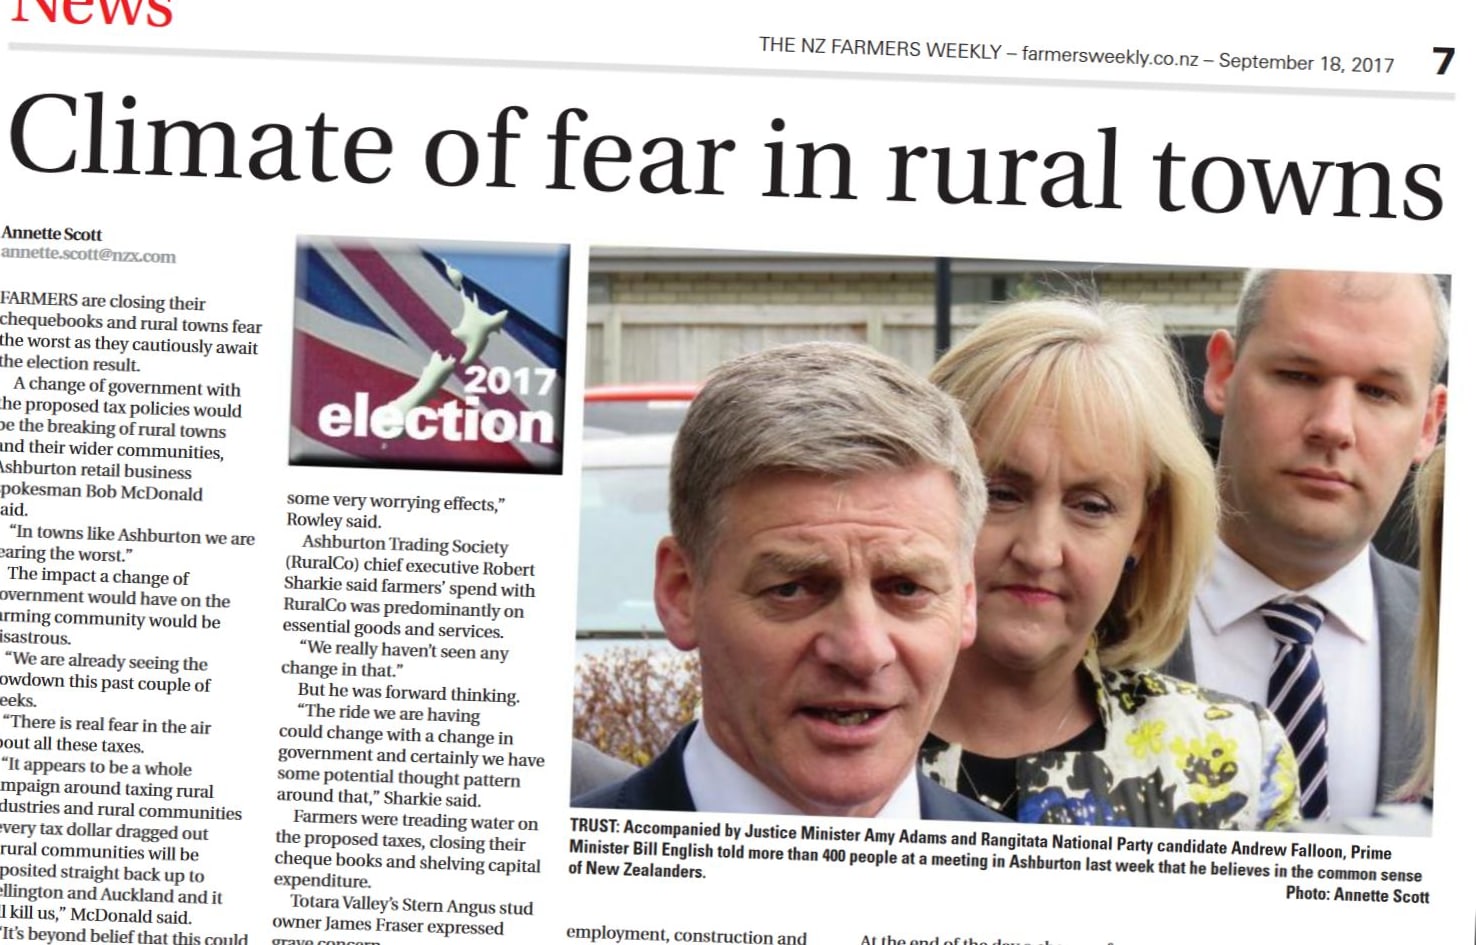 A grim headline in this week's Farmers Weekly